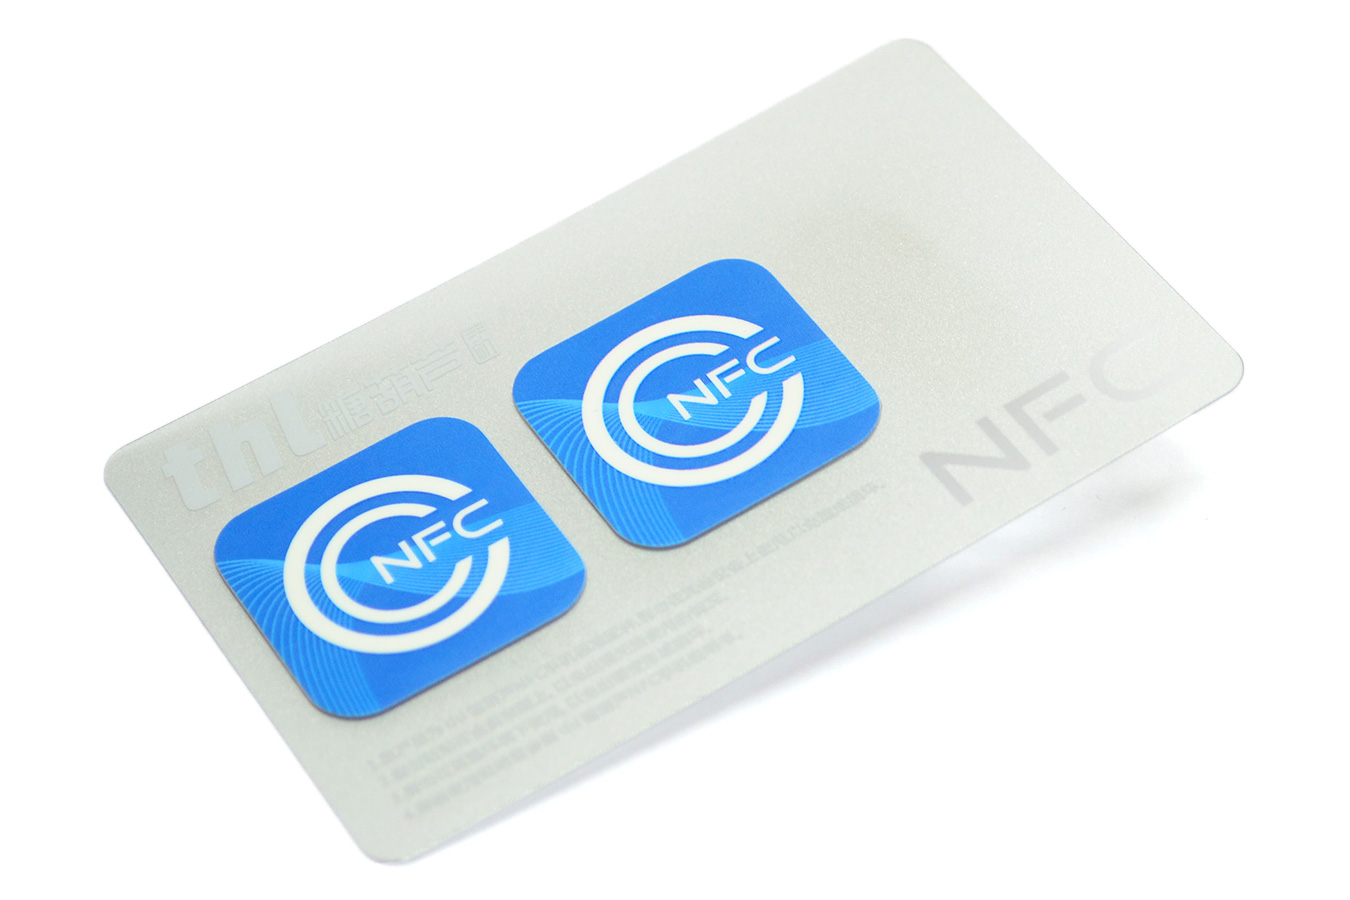 Метка для оплаты. NFC чип. NFC чип для меток. NFC наклейка. NFC метка для бесконтактной оплаты.